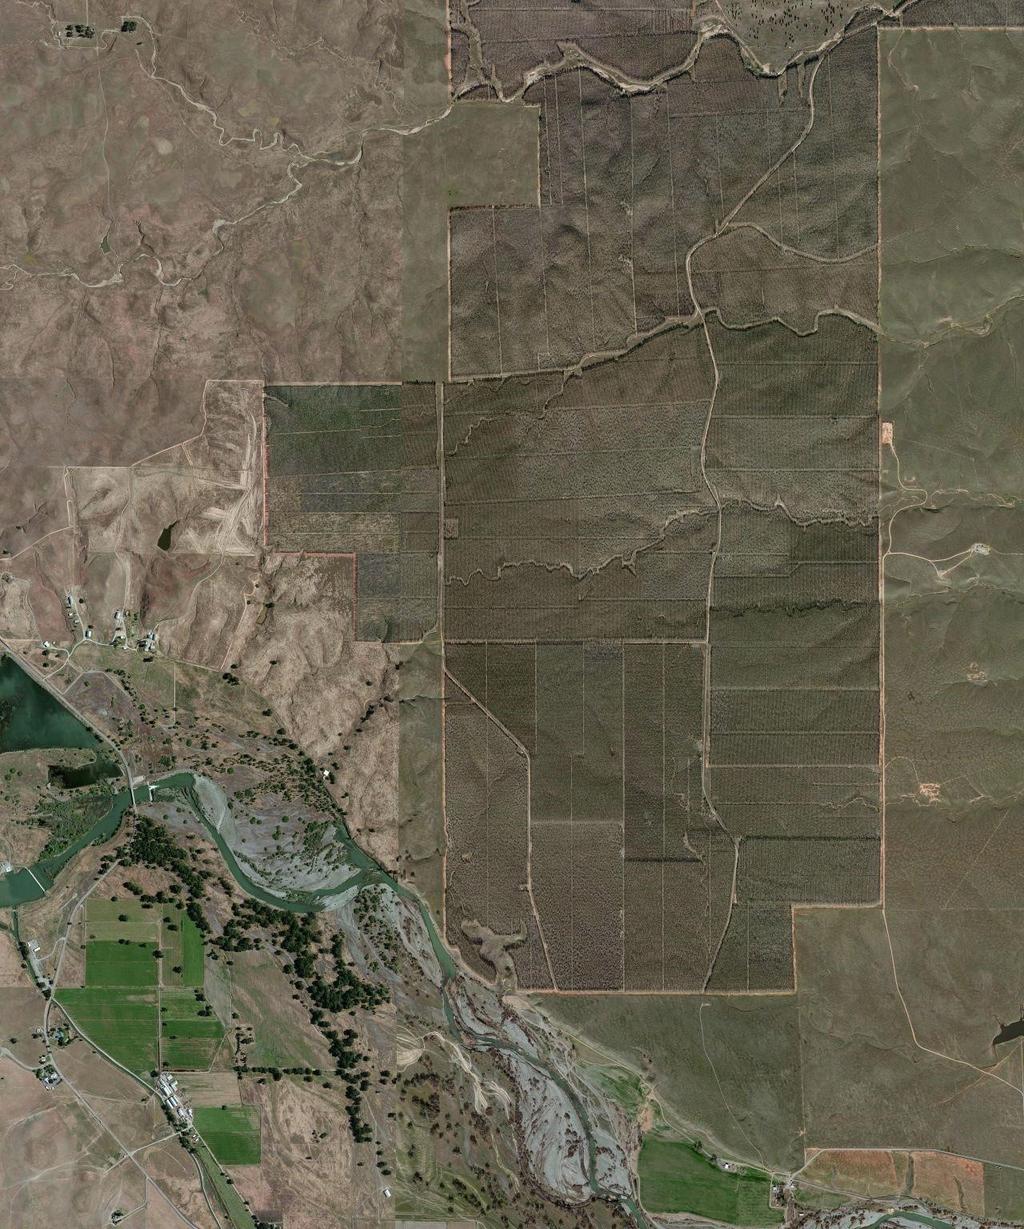 122 19' 19'' W Irrigated Capability Class Tehama County, California (Blue Star LLC) 122 16' 55'' W 39 50' 47'' N 558200 558700 559200 559700 560200 560700 561200 39 50' 47'' N 4406700 4407200 4407700